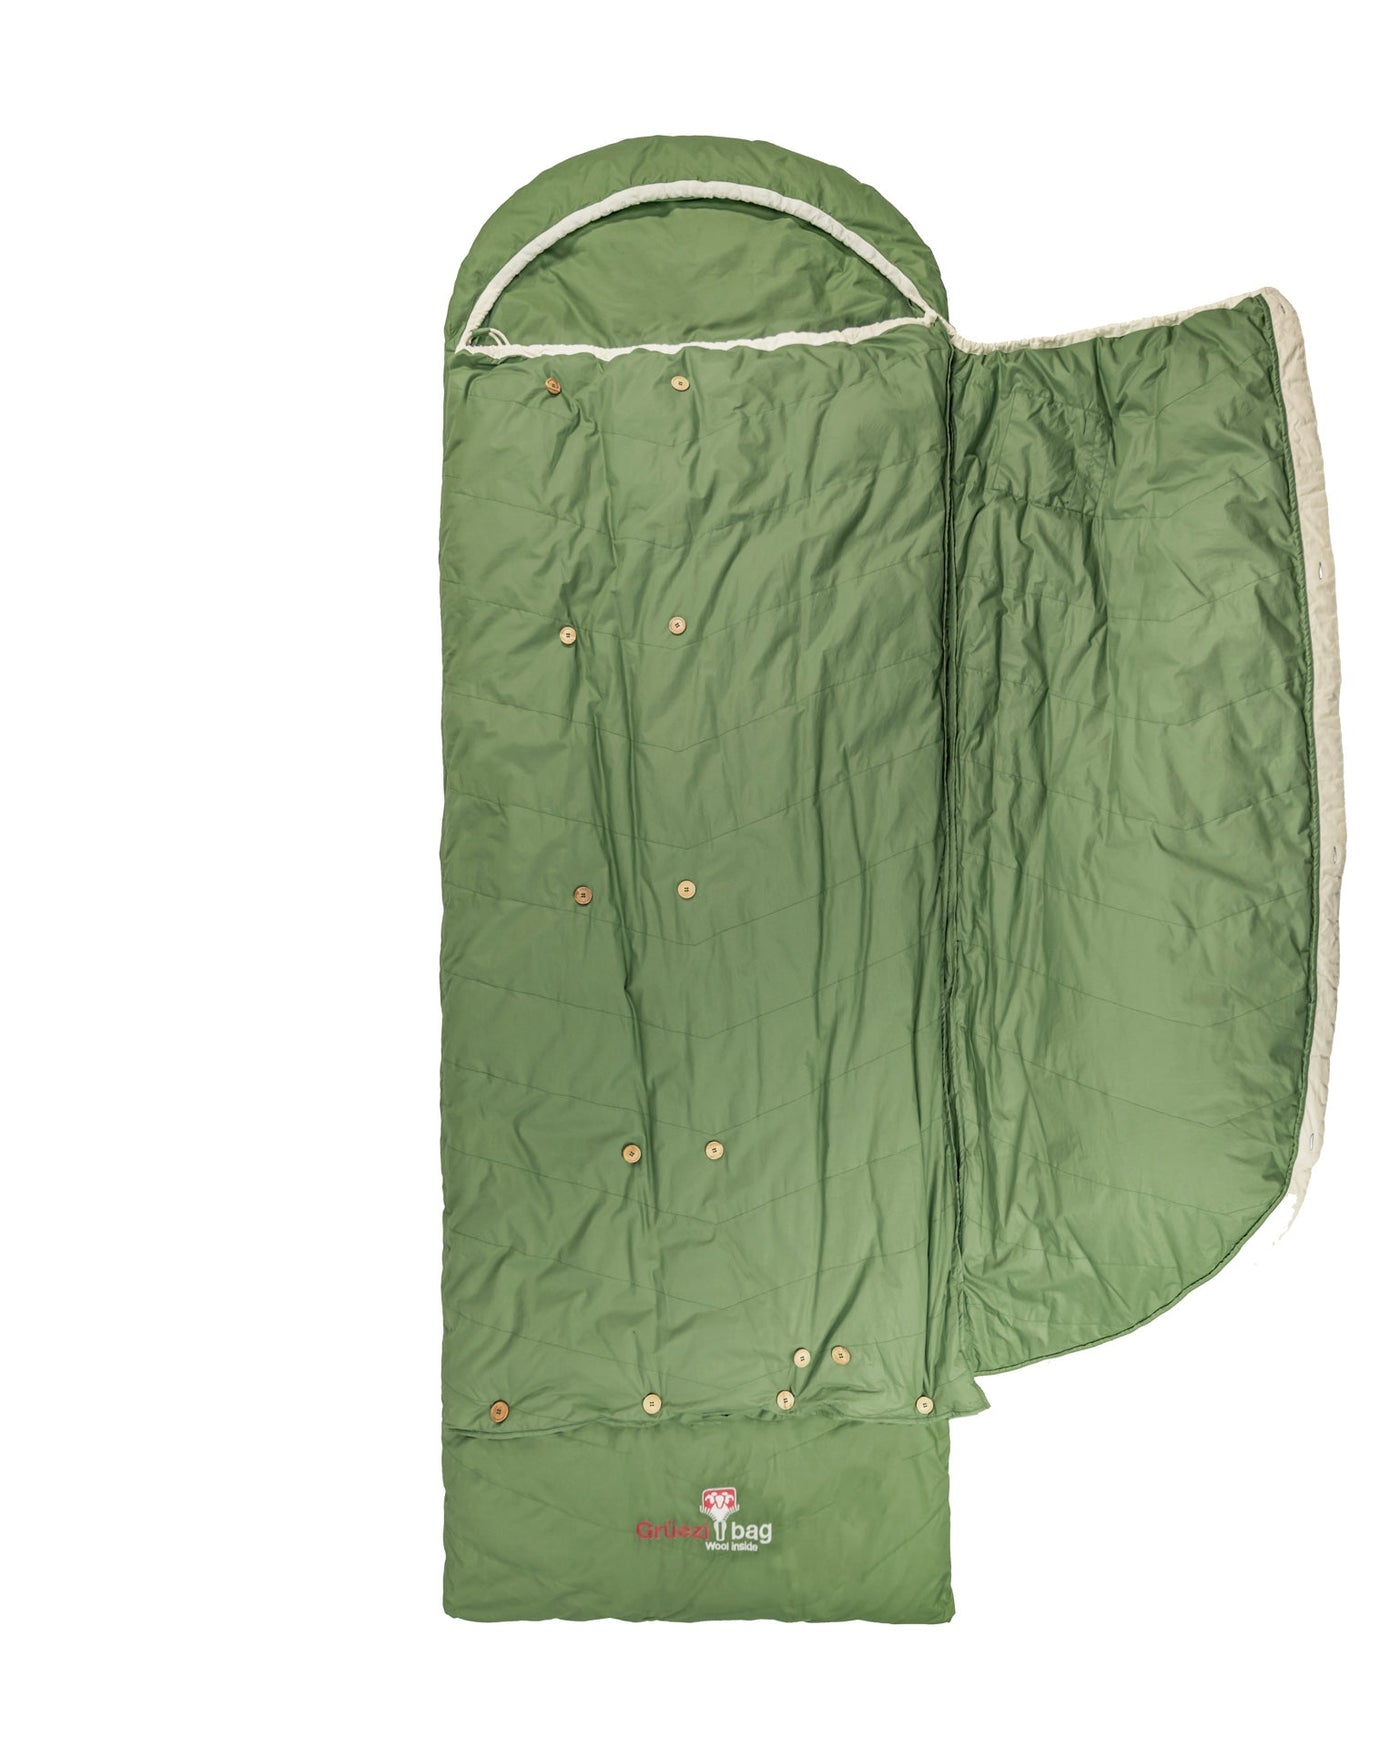 Grüezi bag Campingschlafsack Biopod DownWool Nature Comfort - aufgeschlagen